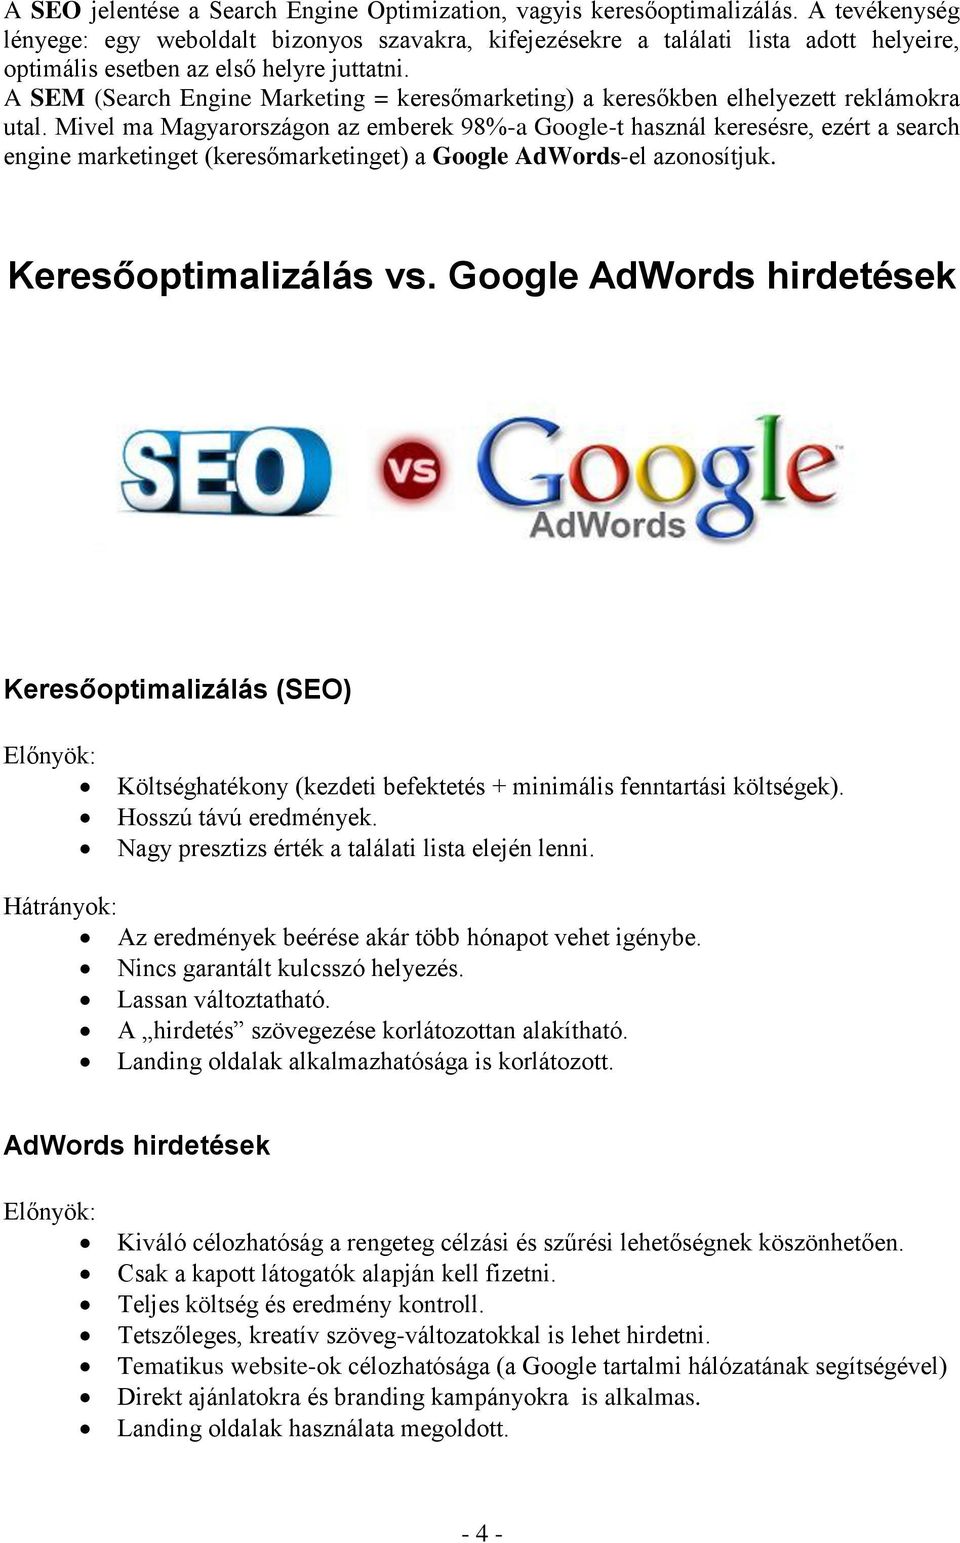 A SEM (Search Engine Marketing = keresőmarketing) a keresőkben elhelyezett reklámokra utal.